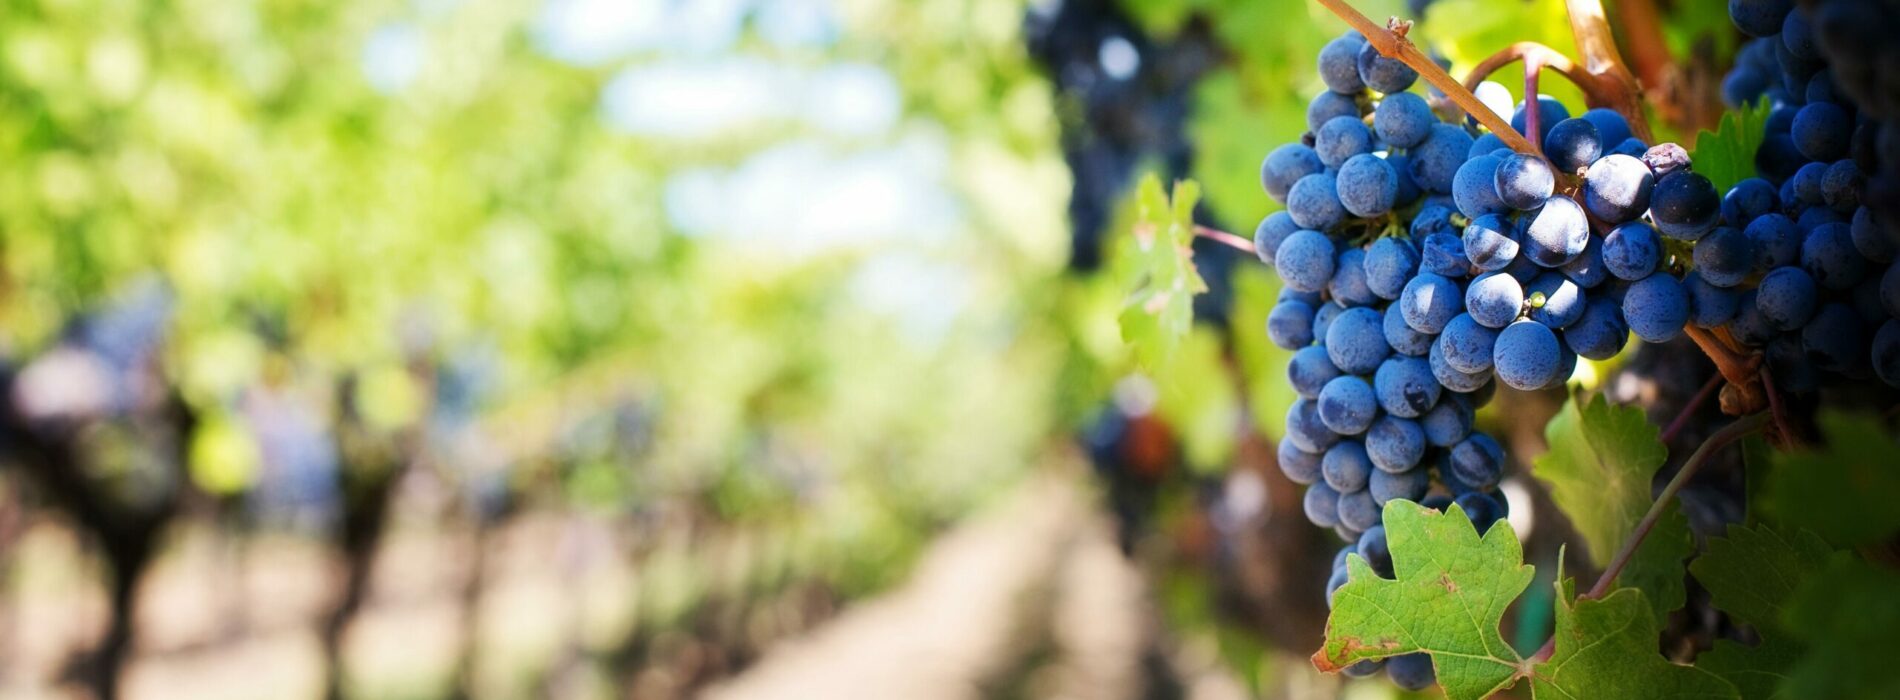 Uprawa winorośli – pielęgnacja, przycinanie i najlepsze odmiany winorośli